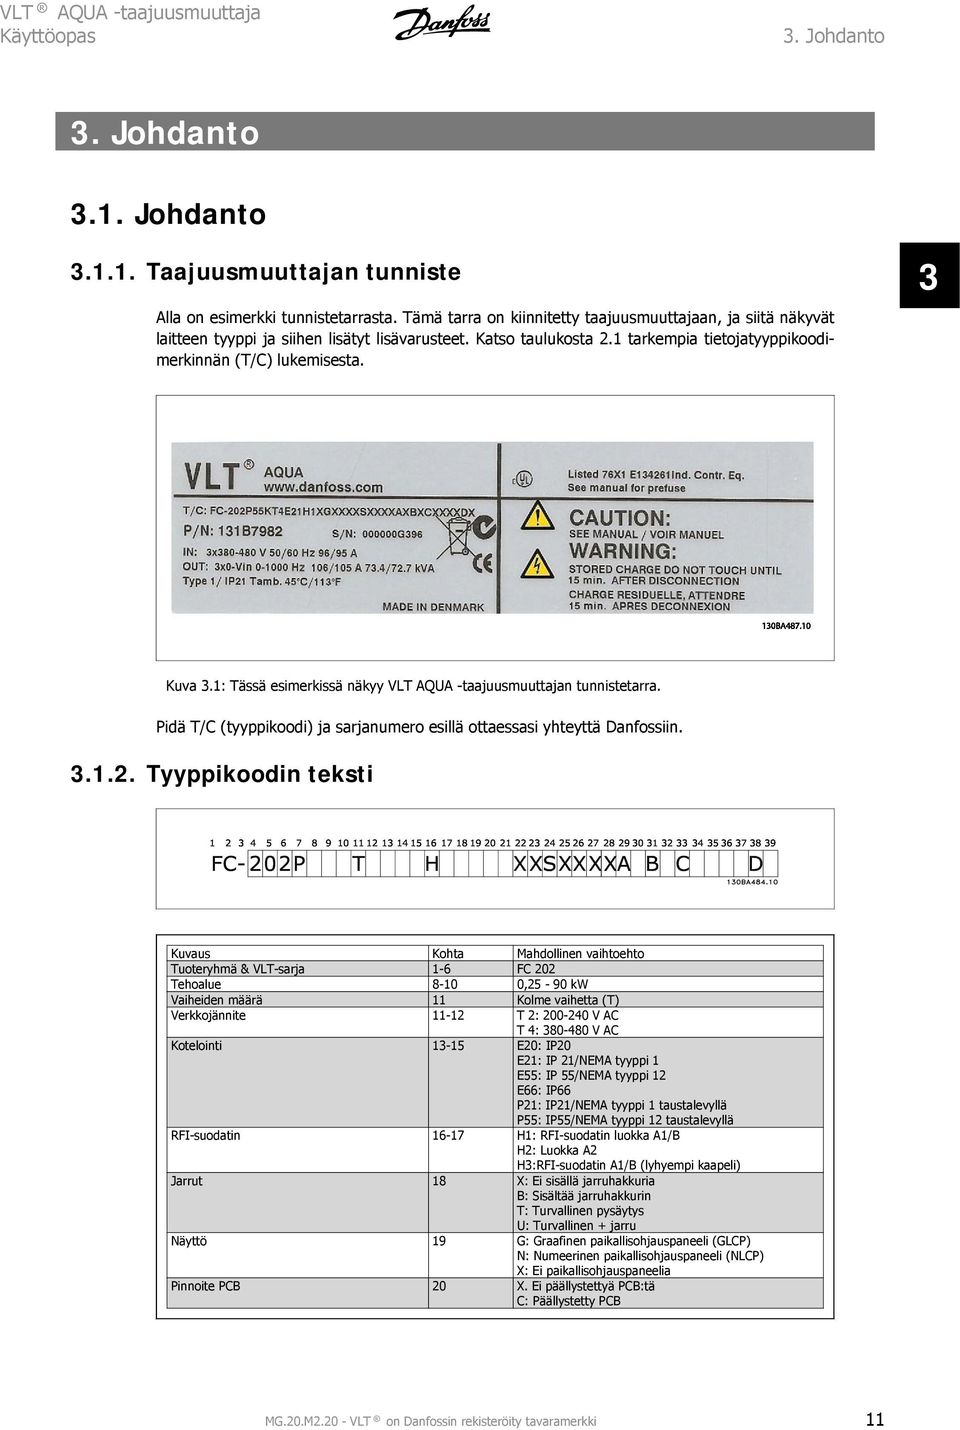 1: Tässä esimerkissä näkyy VLT AQUA -taajuusmuuttajan tunnistetarra. Pidä T/C (tyyppikoodi) ja sarjanumero esillä ottaessasi yhteyttä Danfossiin. 3.1.2.